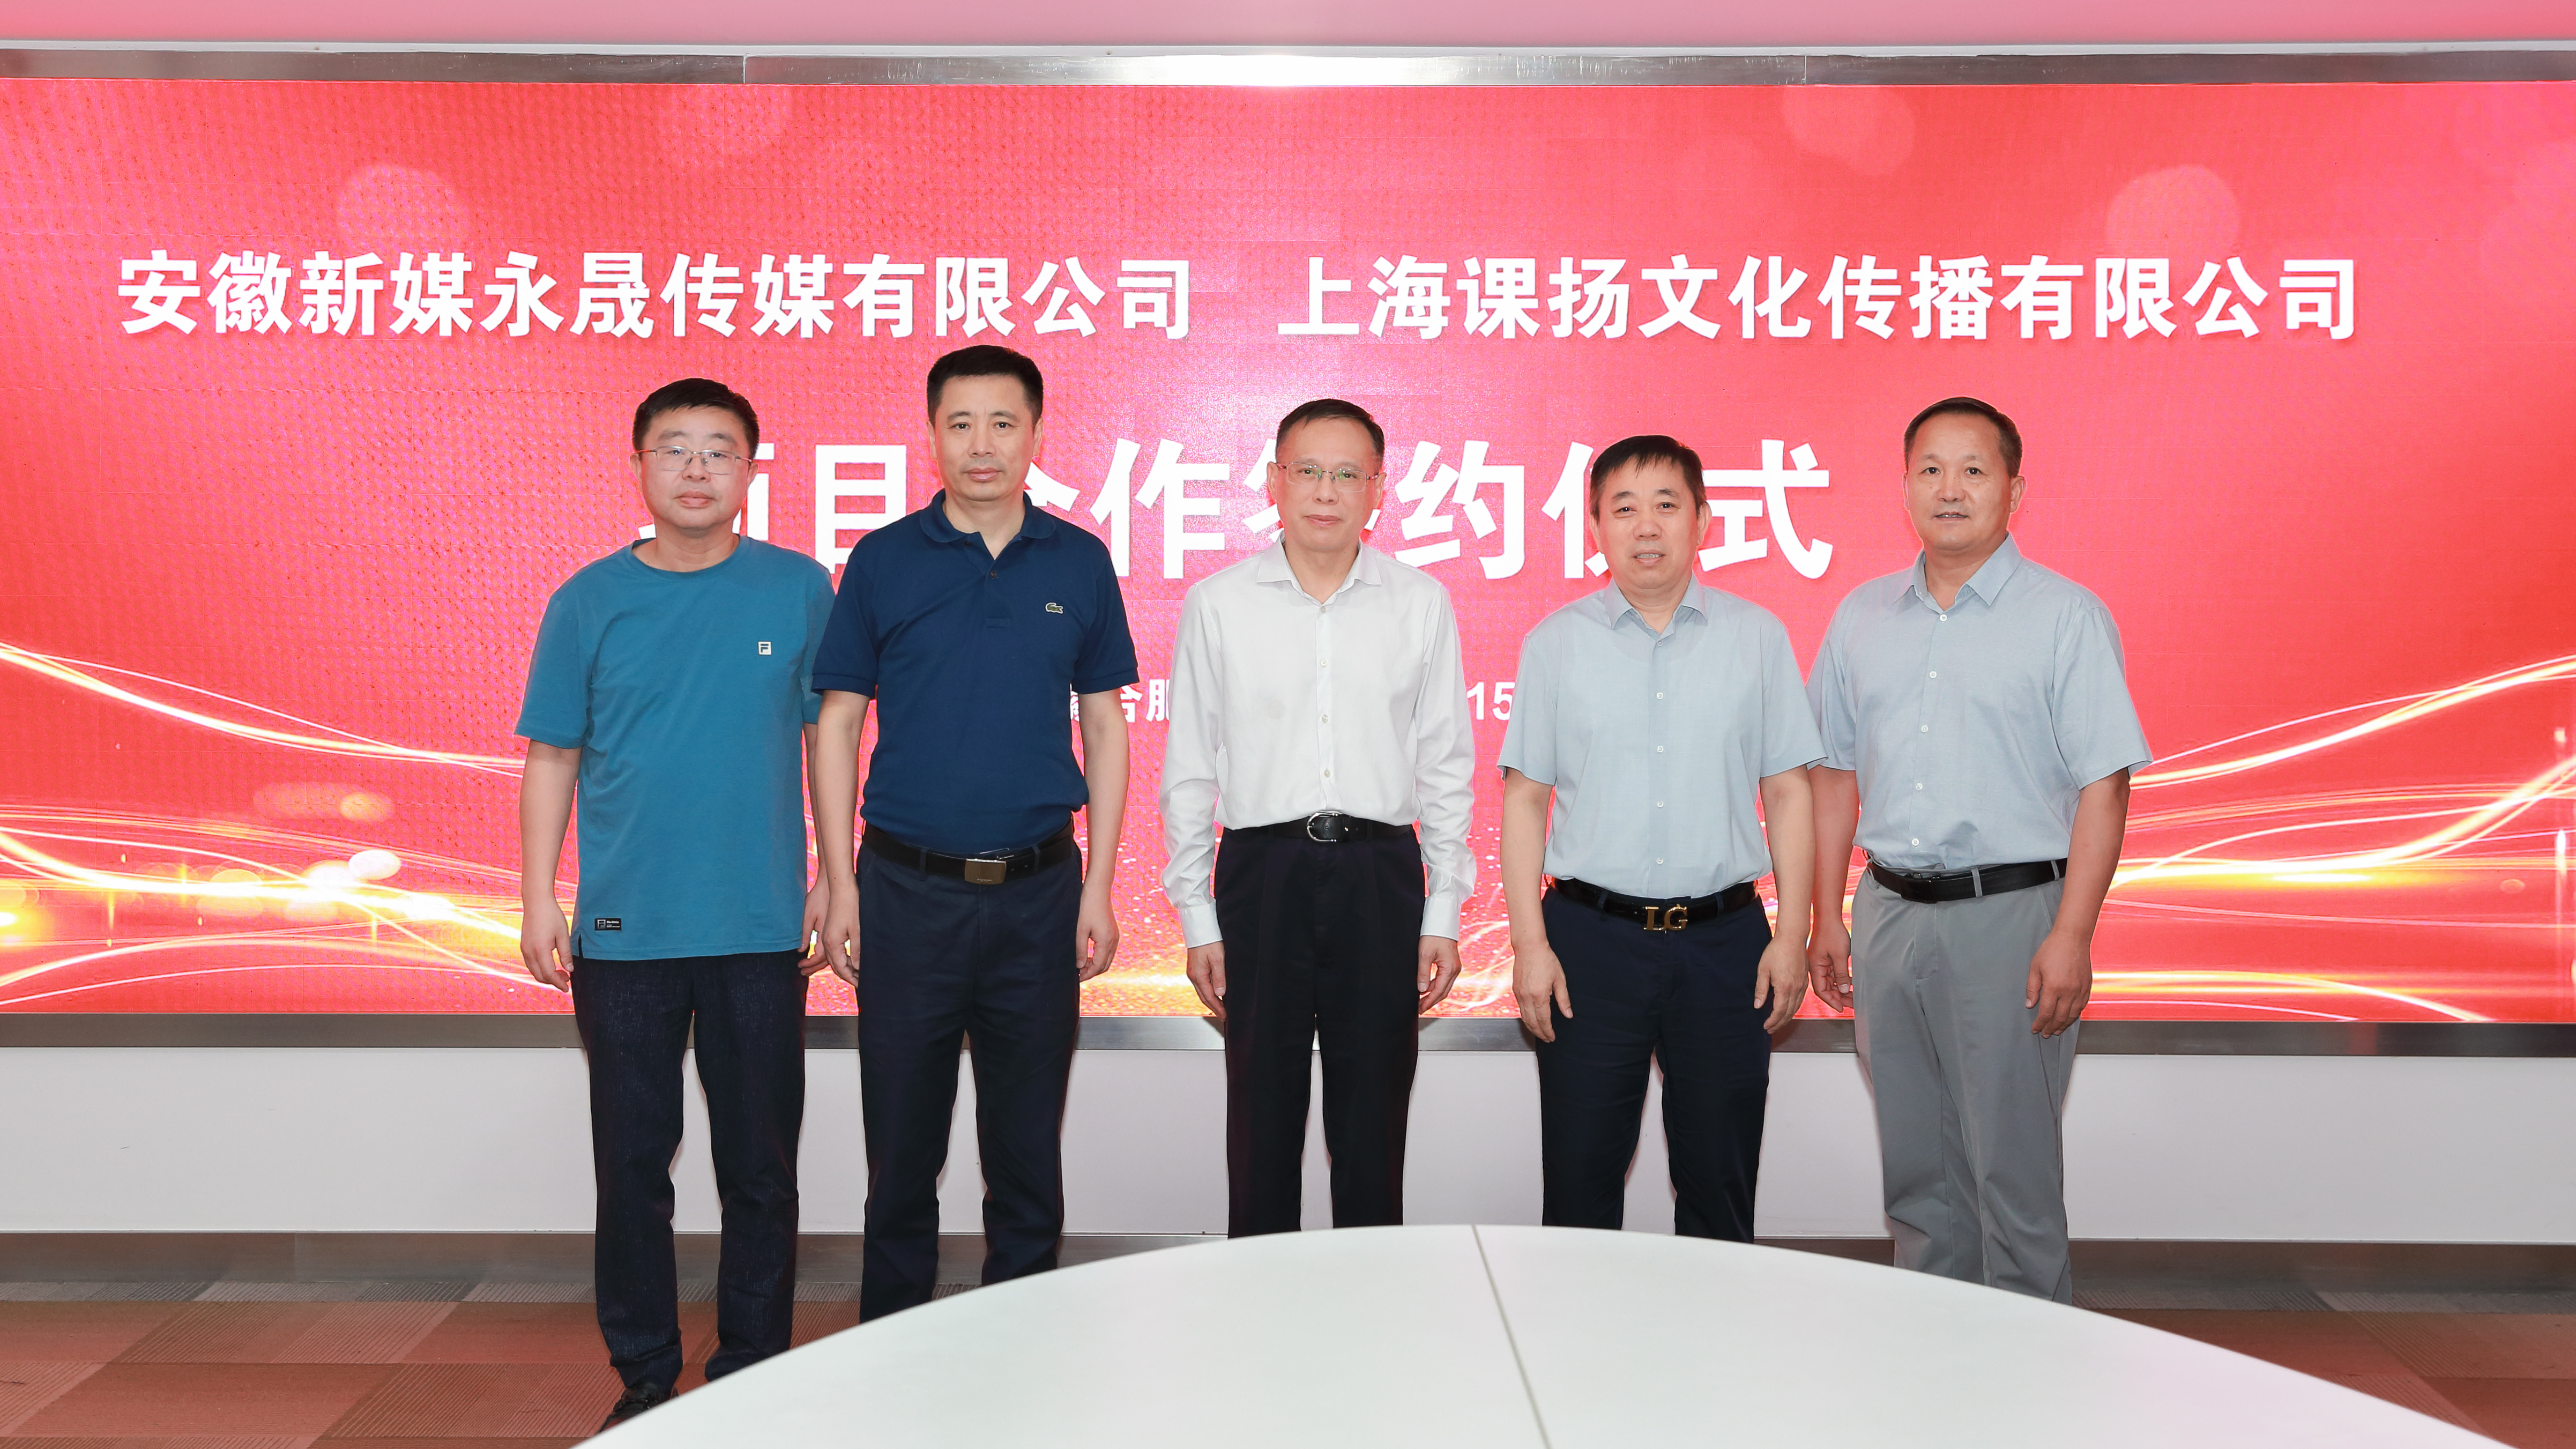 安徽新媒永晟传媒有限公司与上海课扬文化传播有限公司签署合作协议